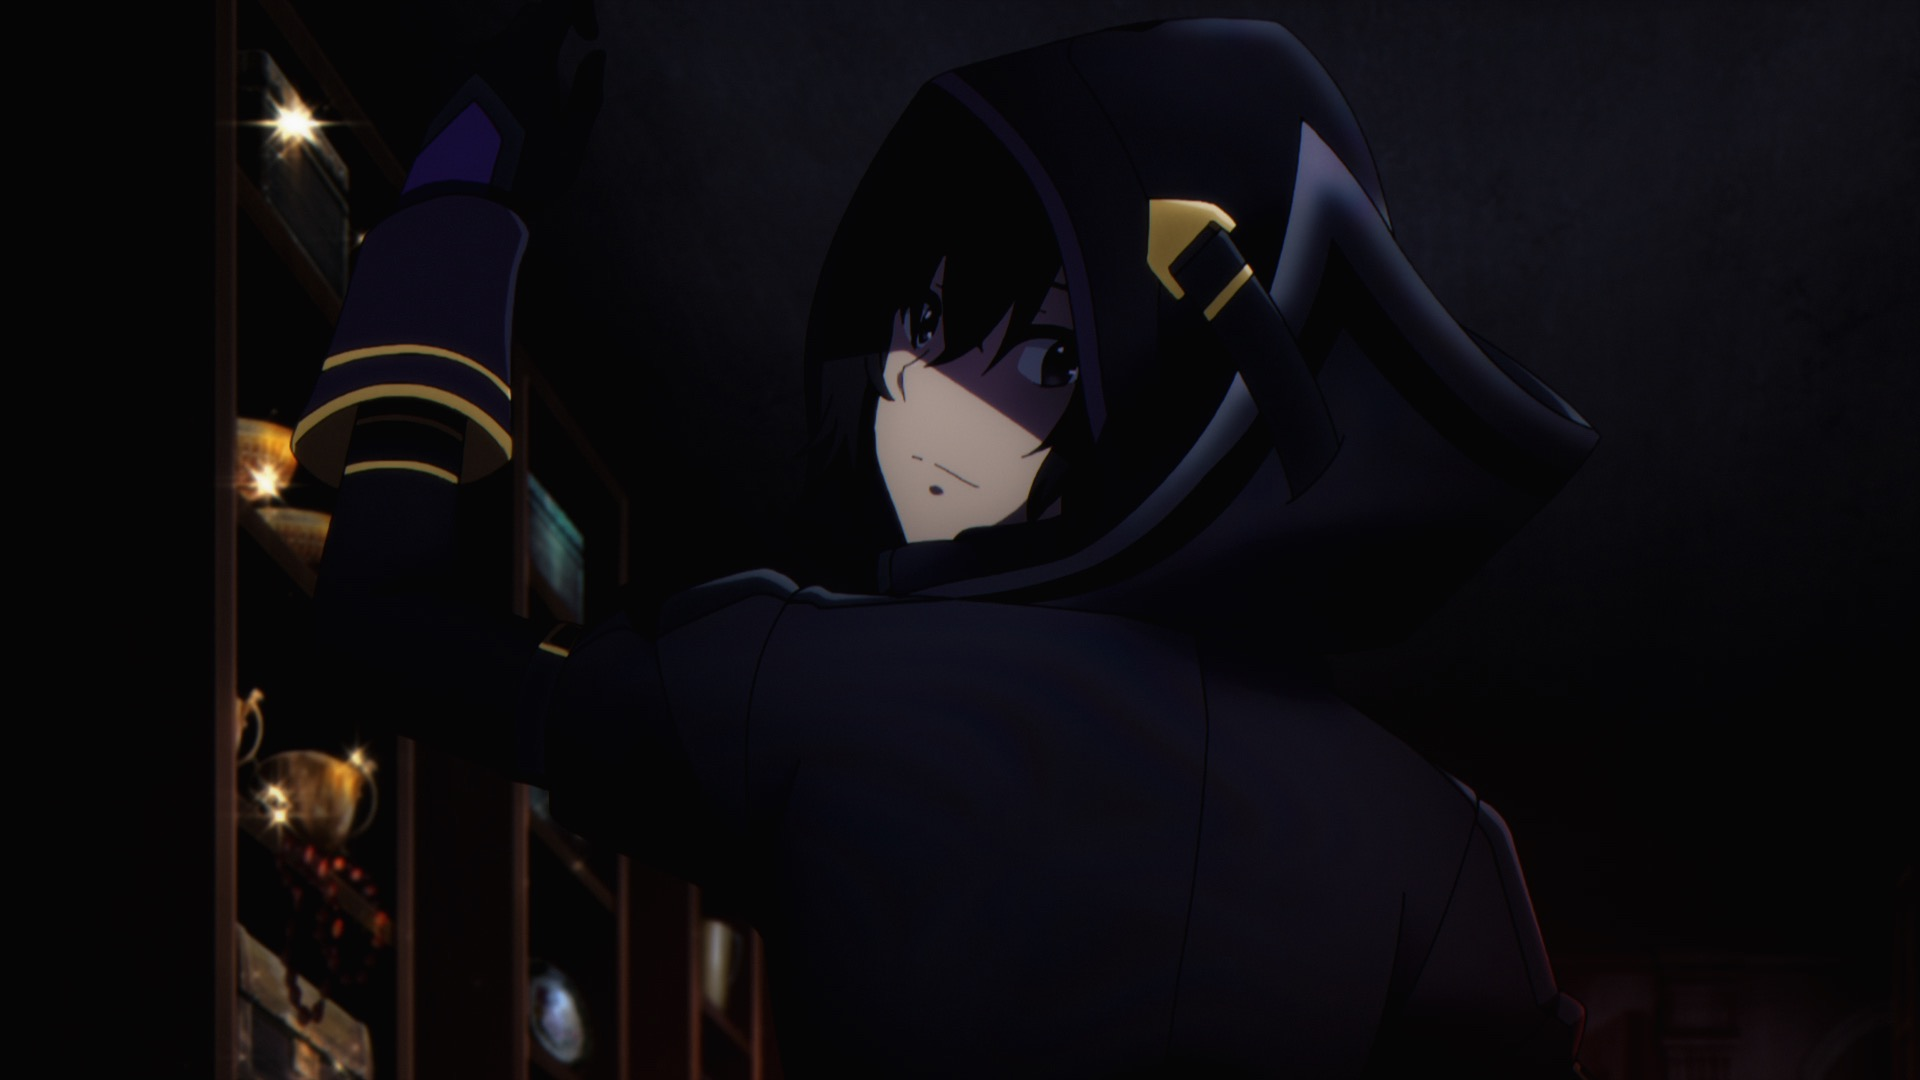 The Eminence in Shadow - Teaser e imagem promocional - AnimeNew